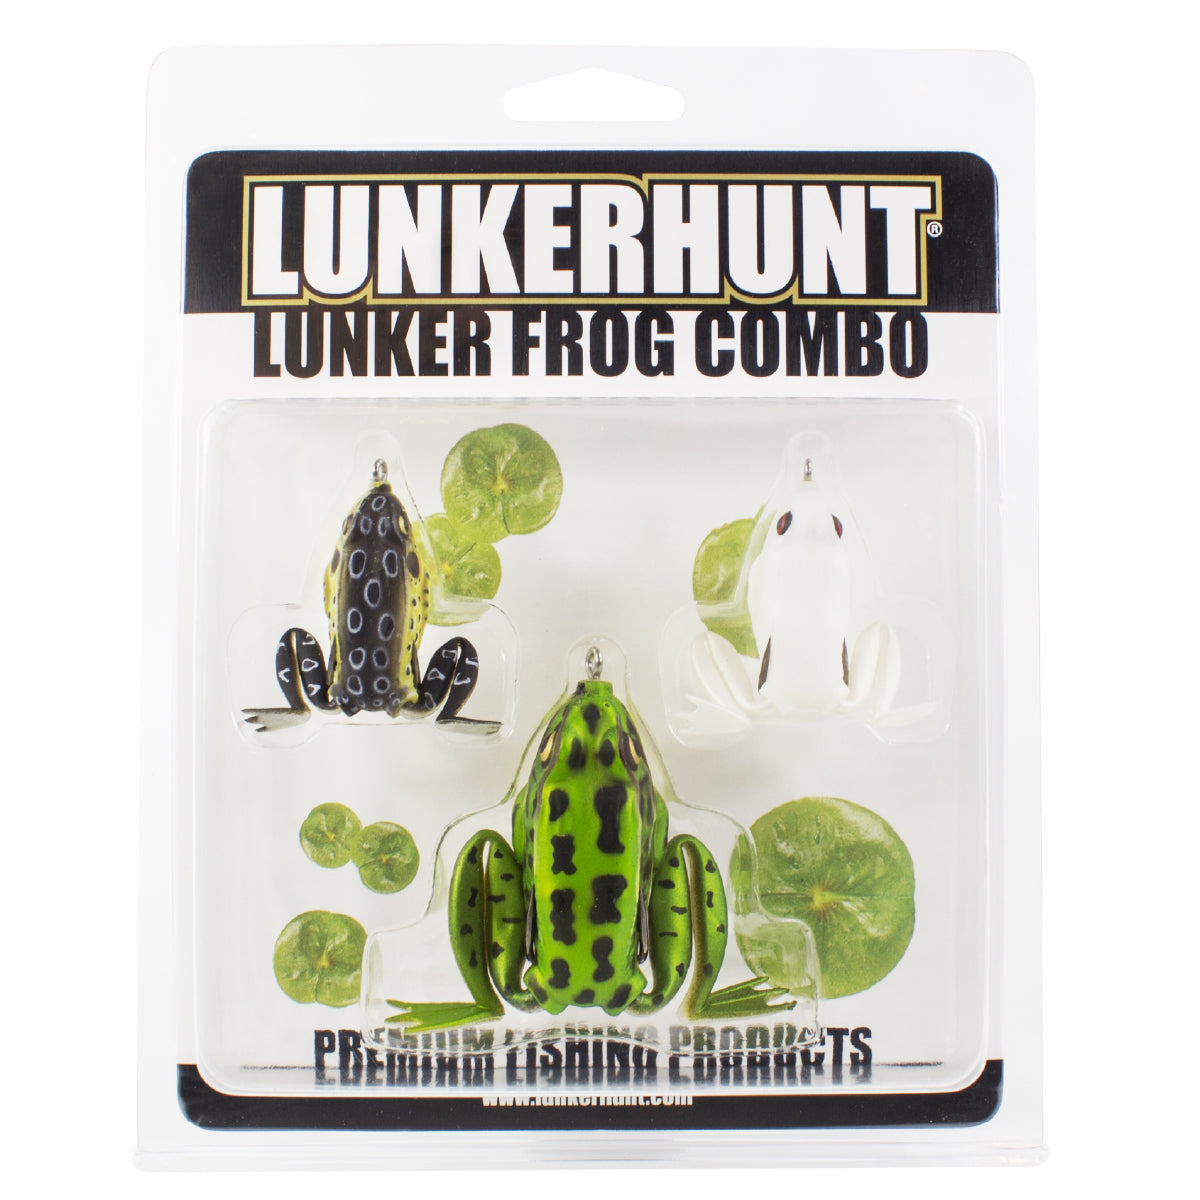 Lunker Frog Combo – Lunkerhunt